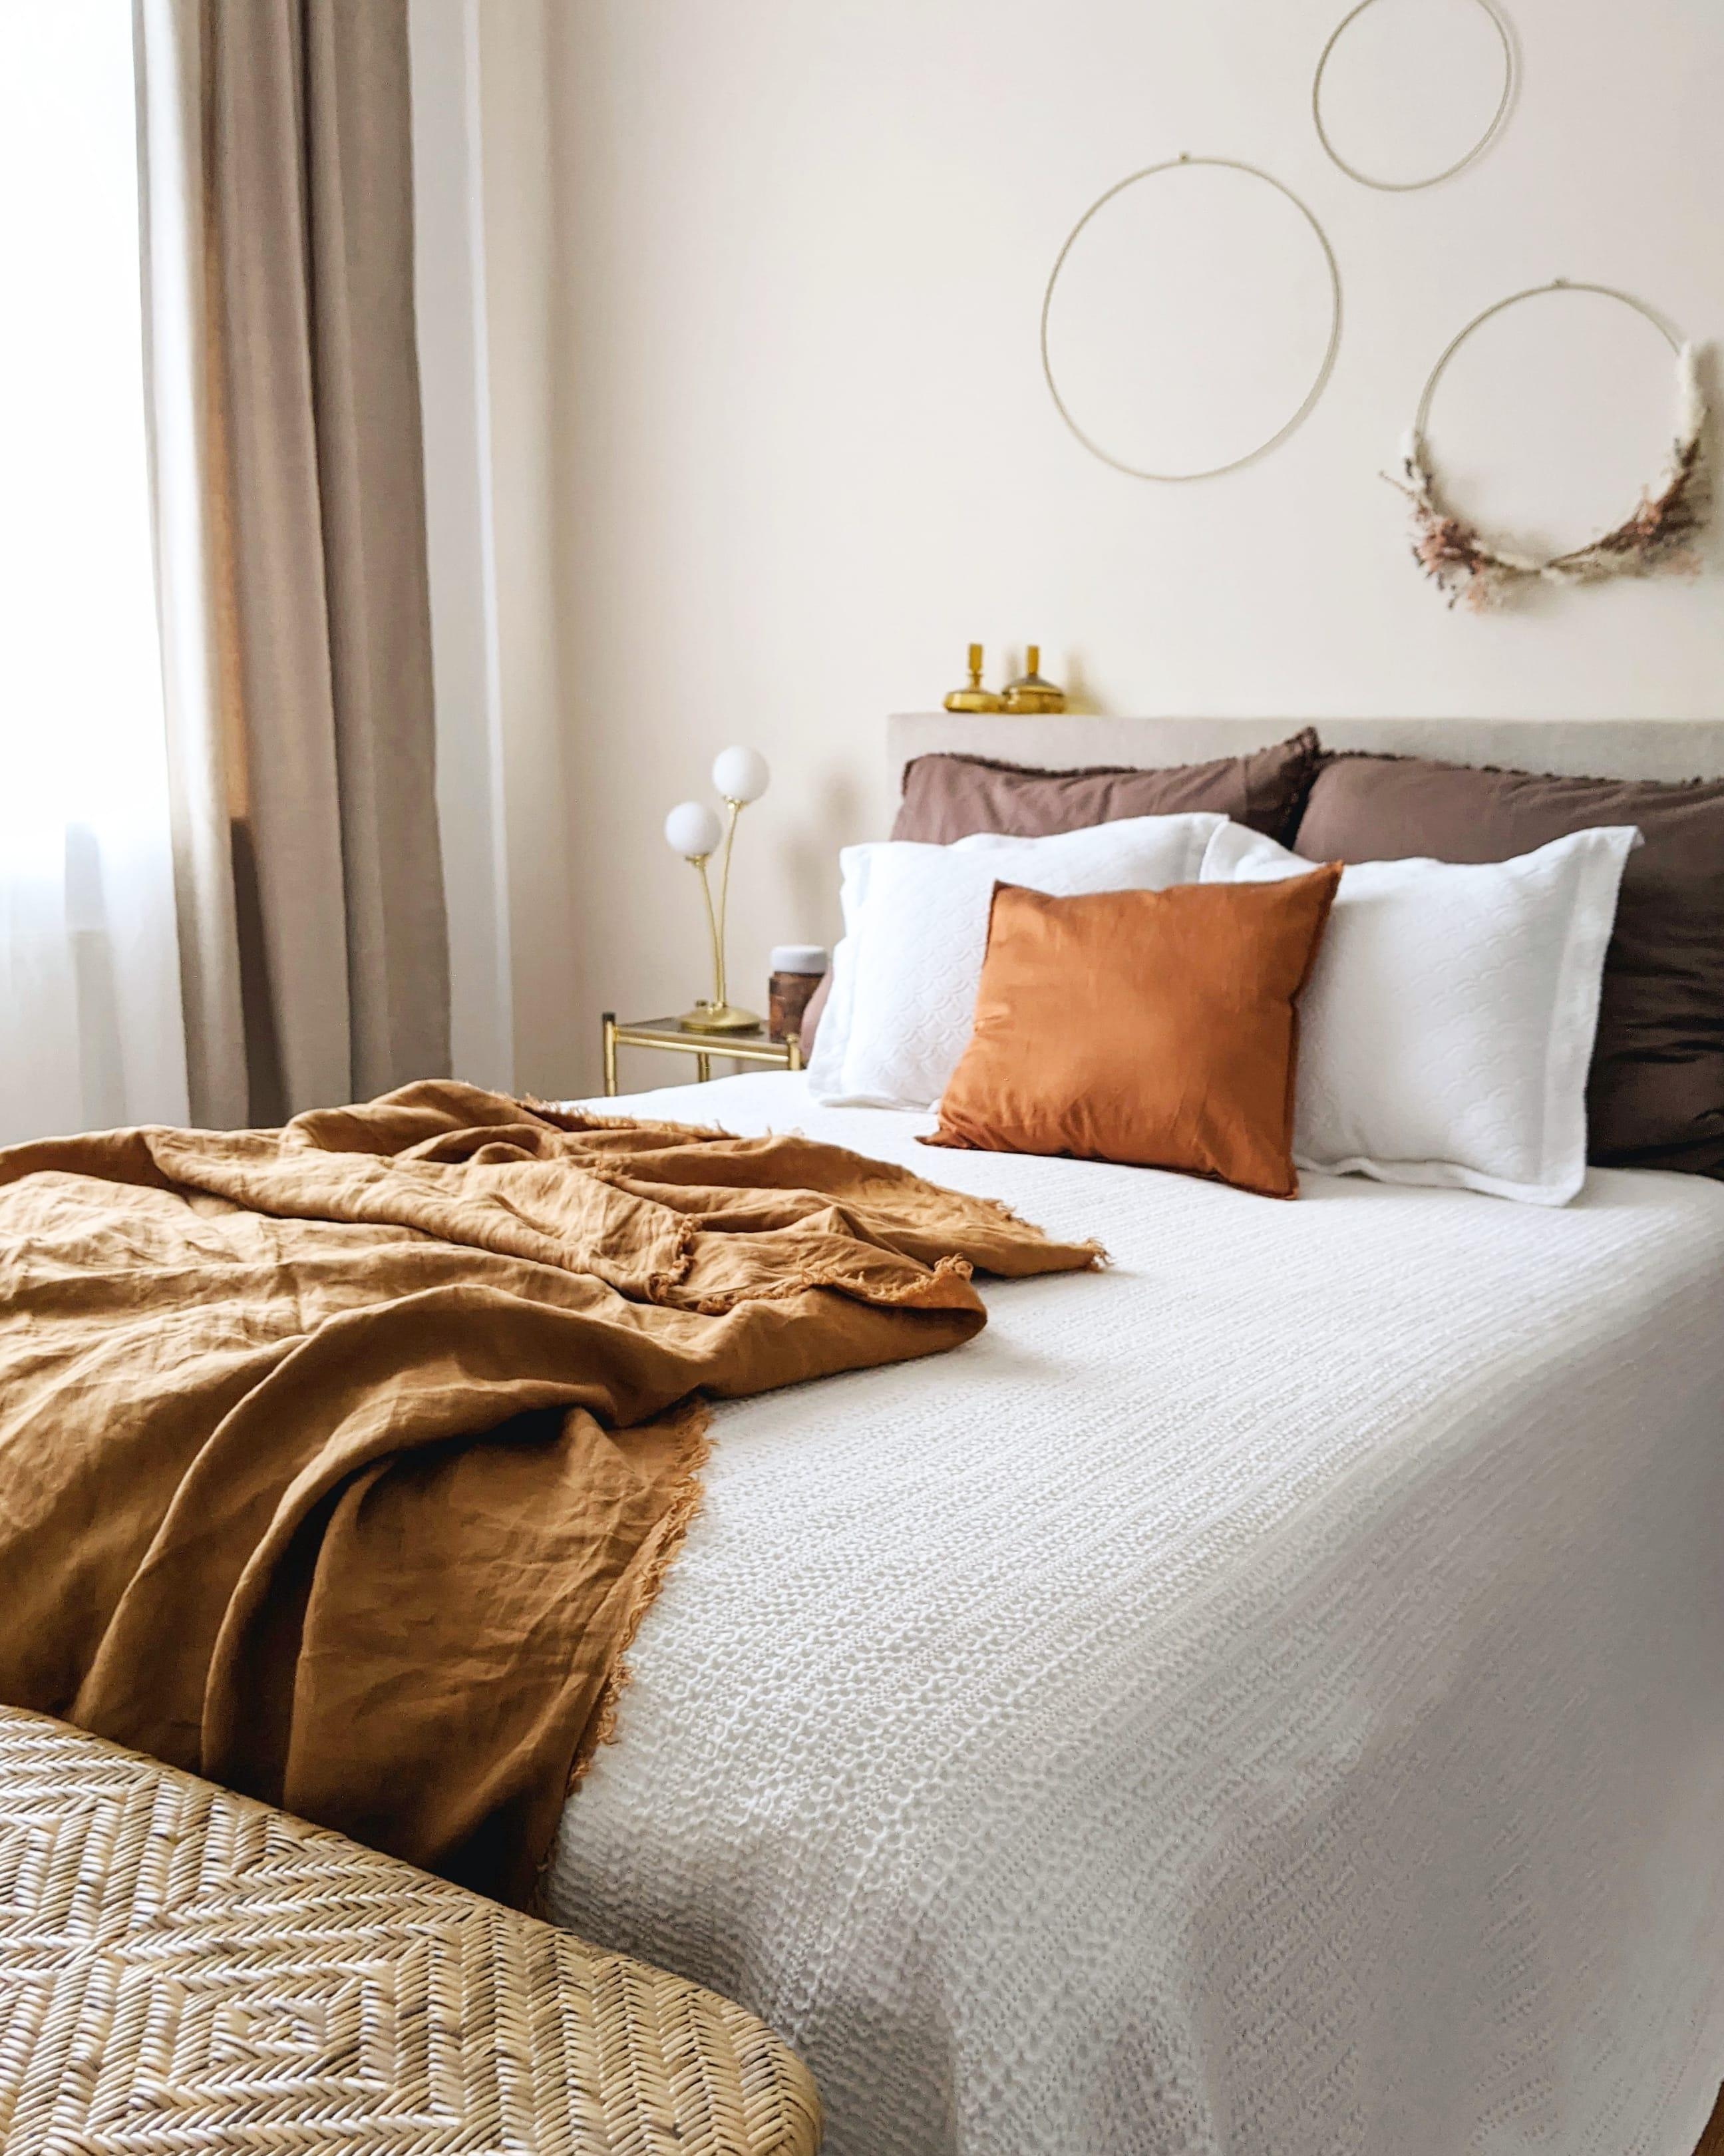 Raus aus den Federn! #bedroom #goodmorning #couchliebt #schlafzimmer #autumnvibes #herbstfarben